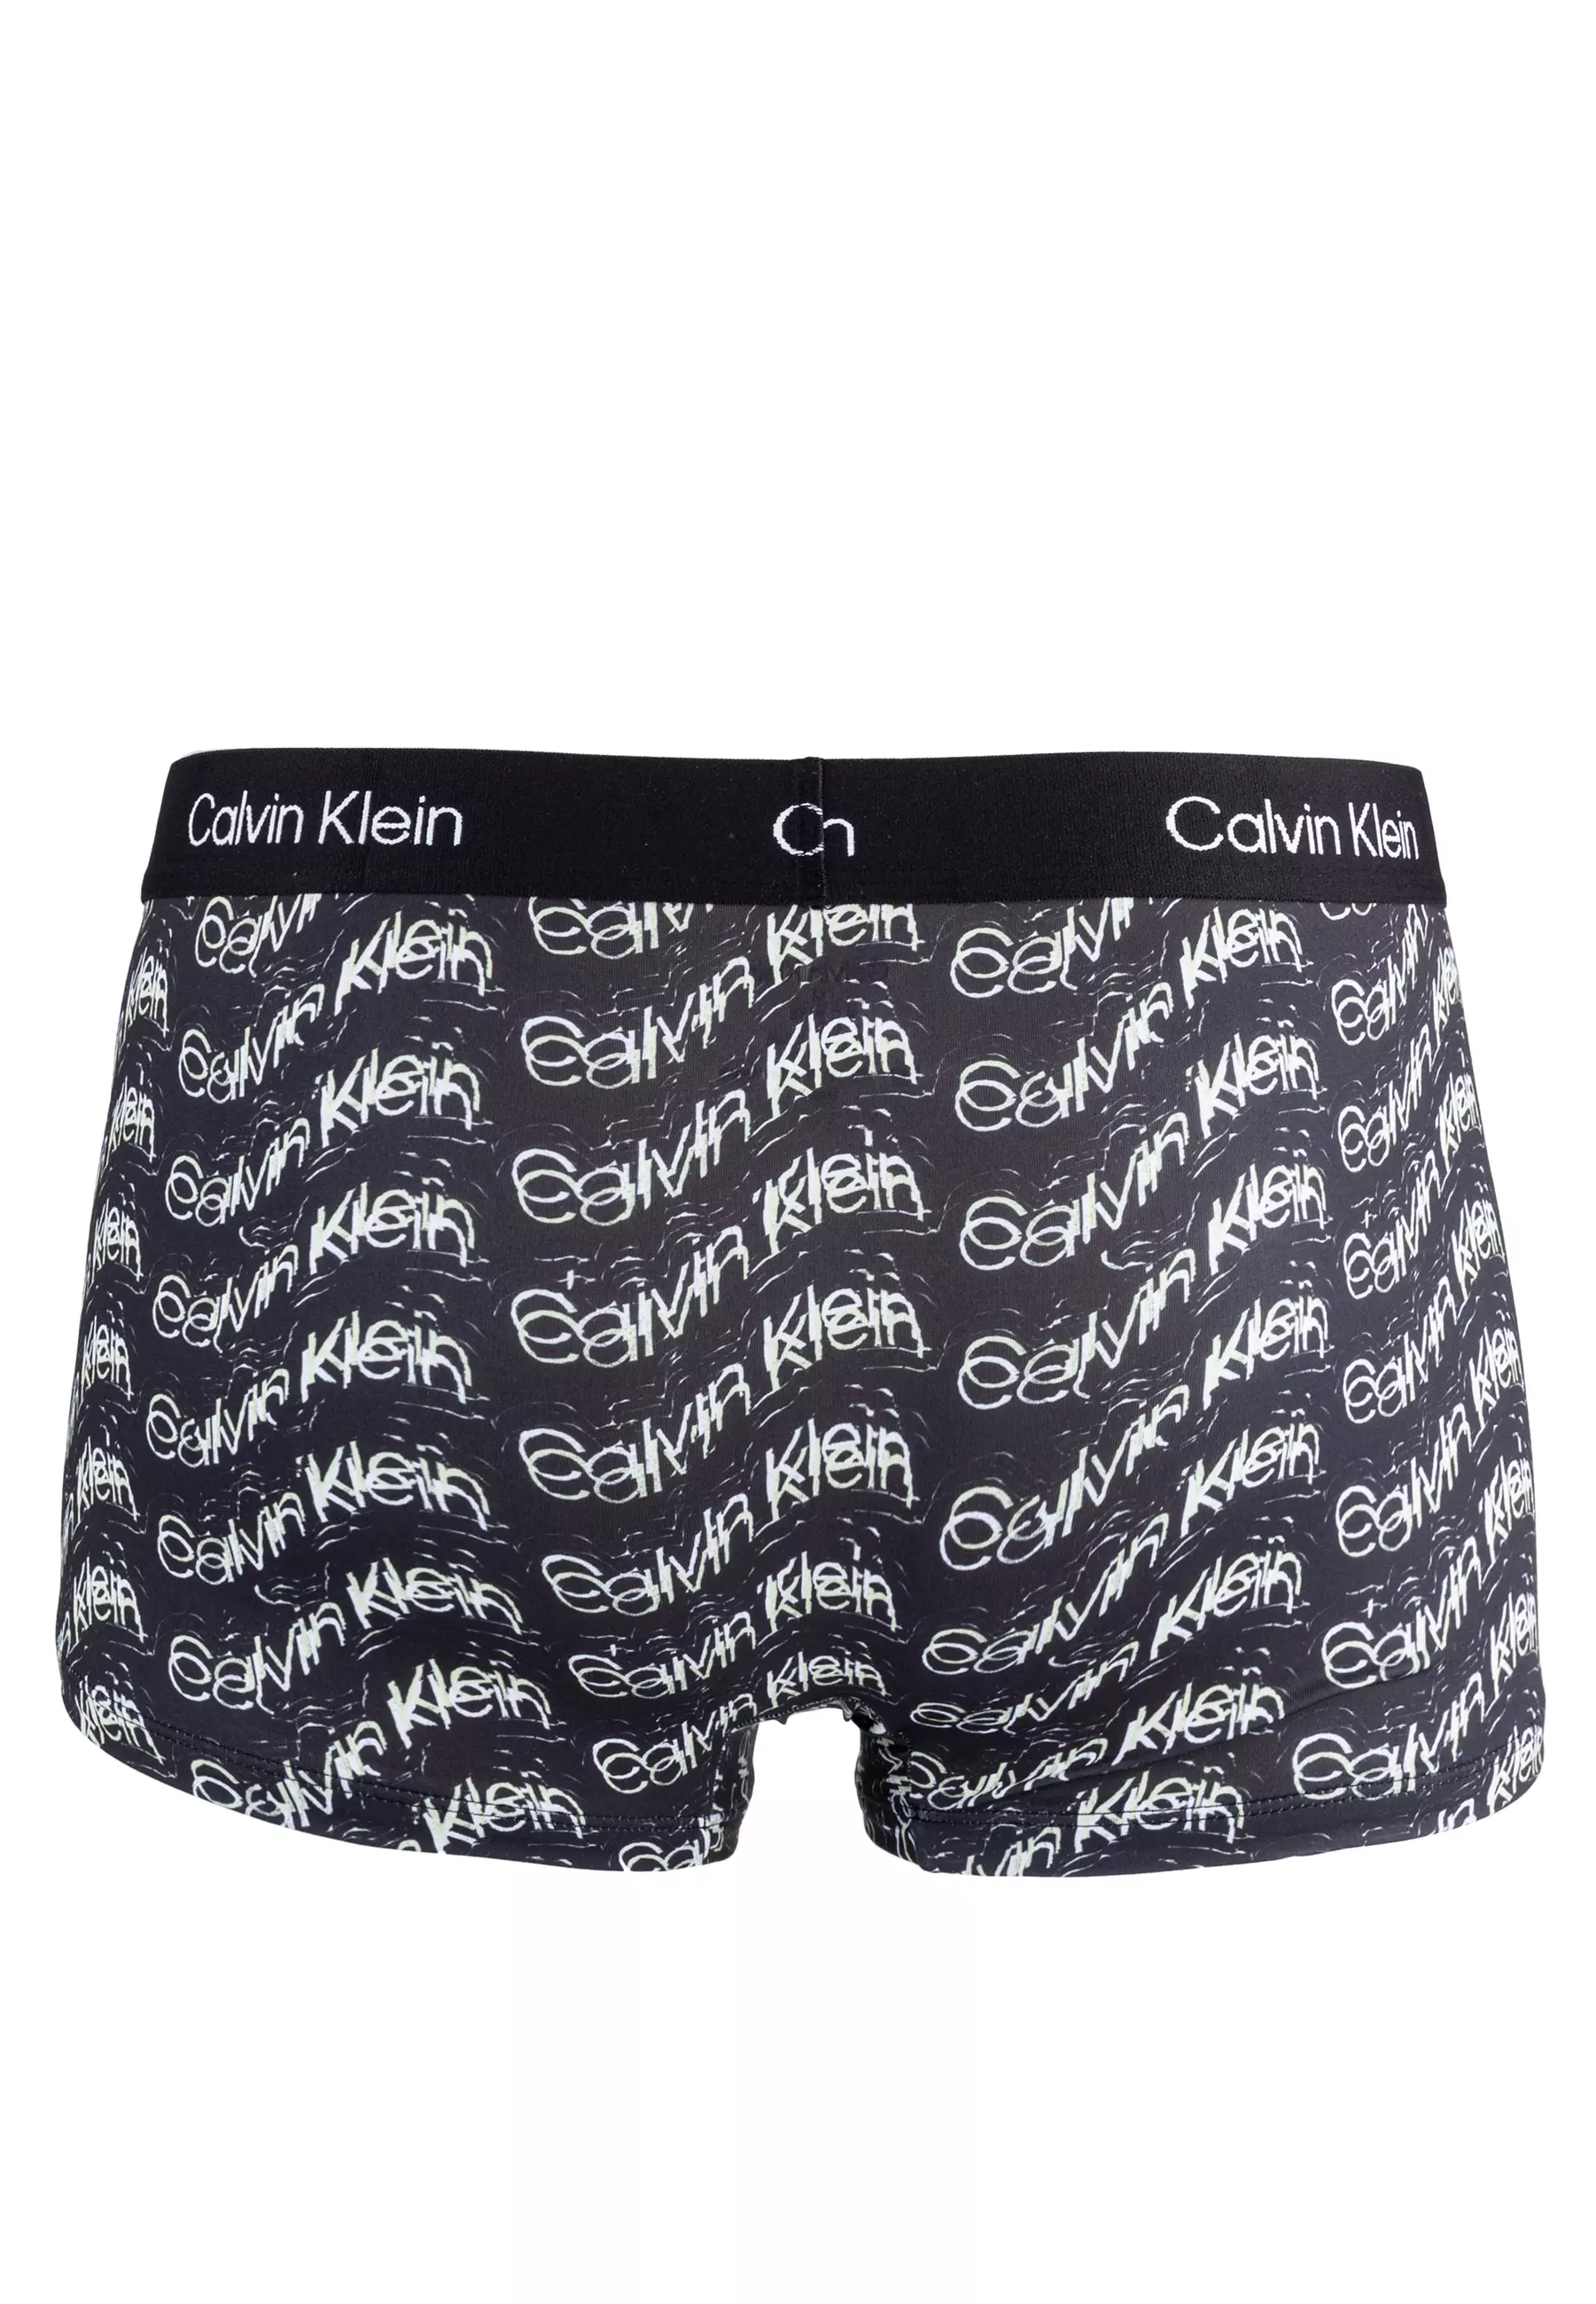 Buy Calvin Klein 1996 Micro Low Rise Trunks - Calvin Klein Underwear Online